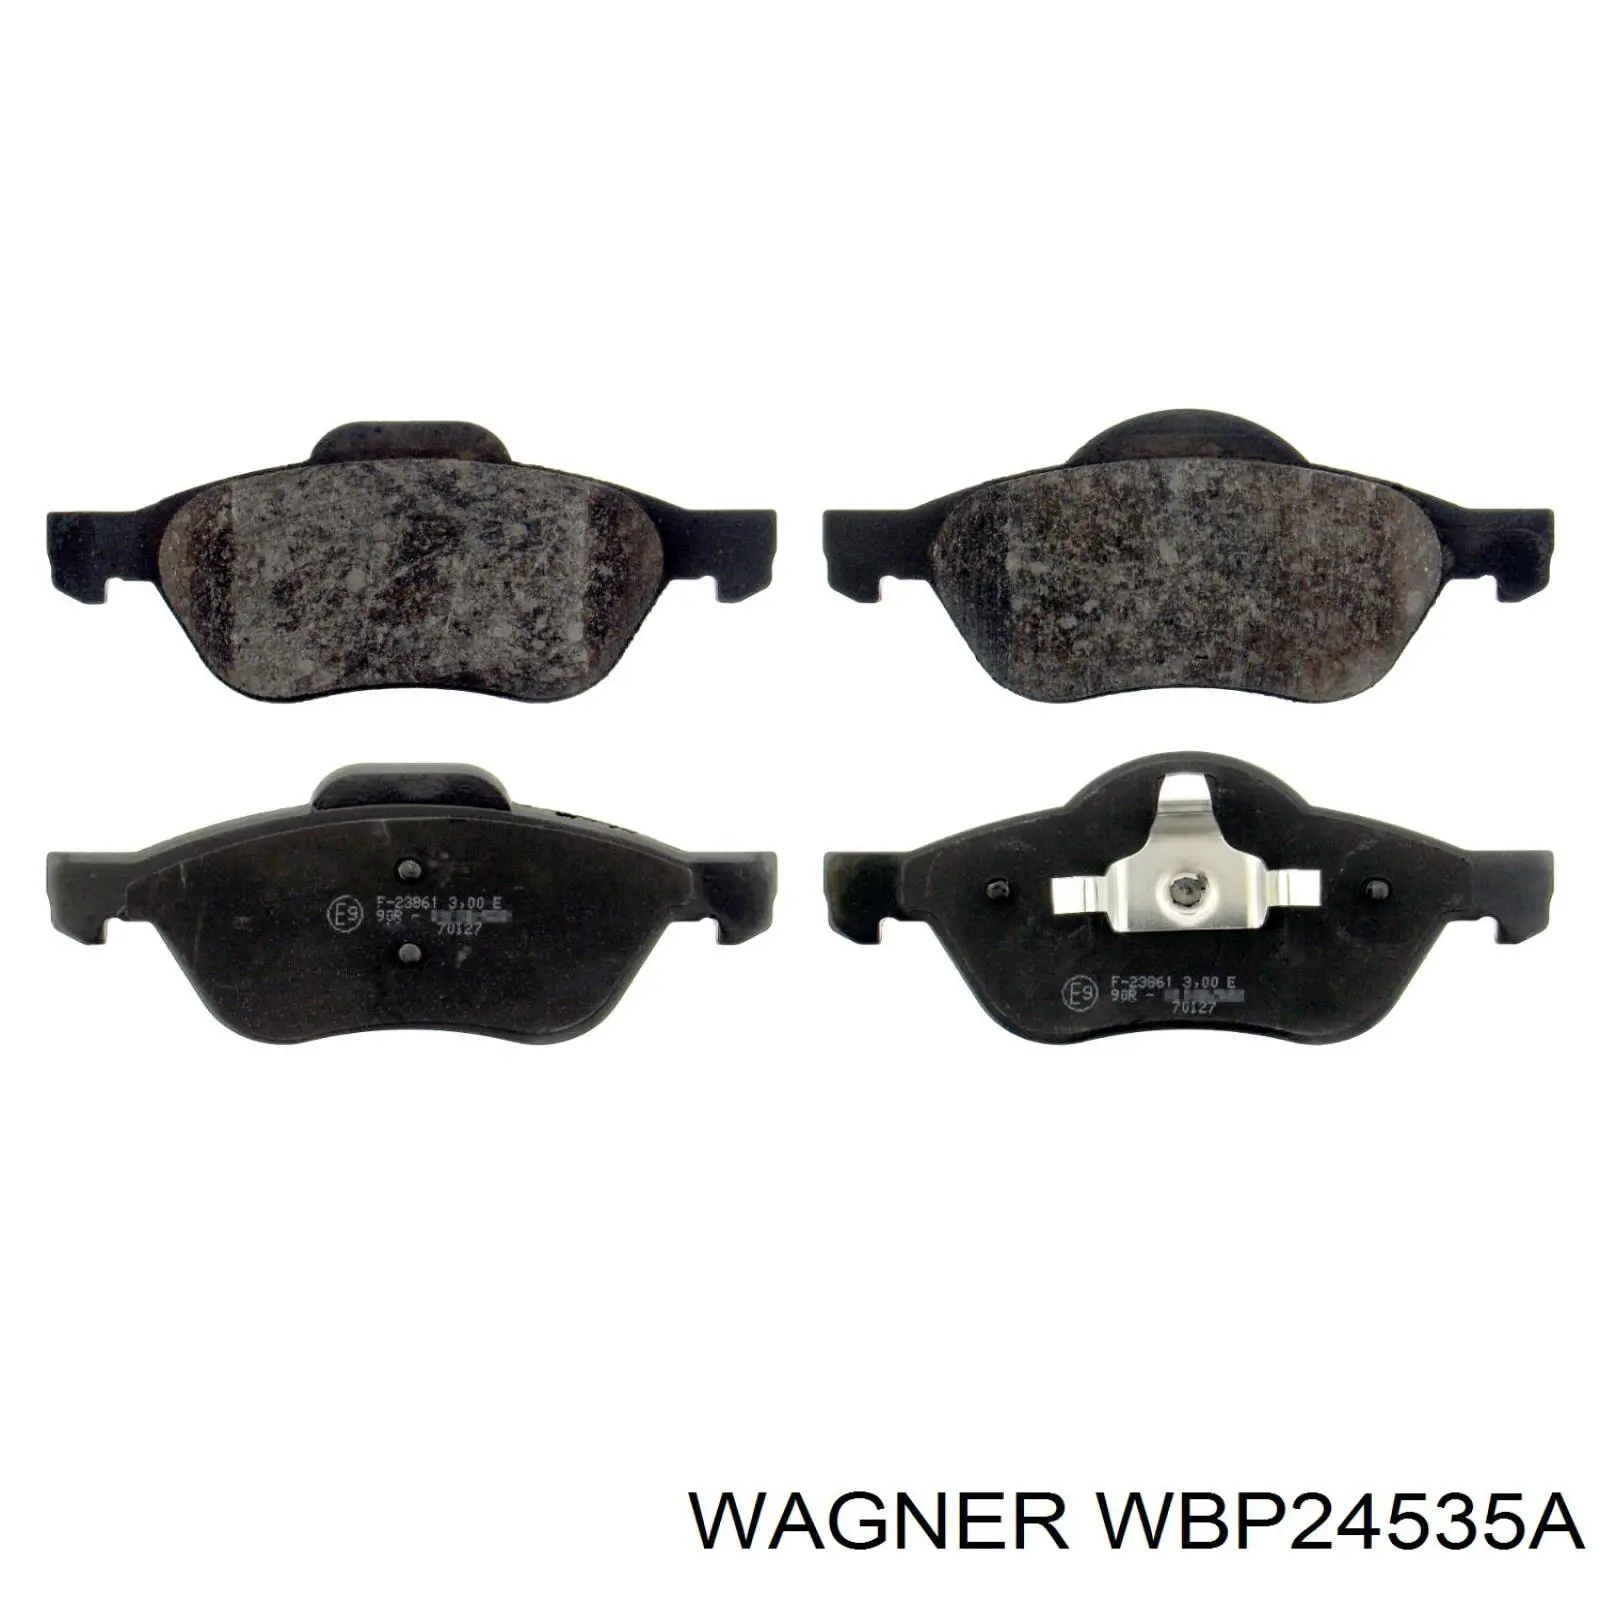 Передние тормозные колодки WBP24535A Wagner